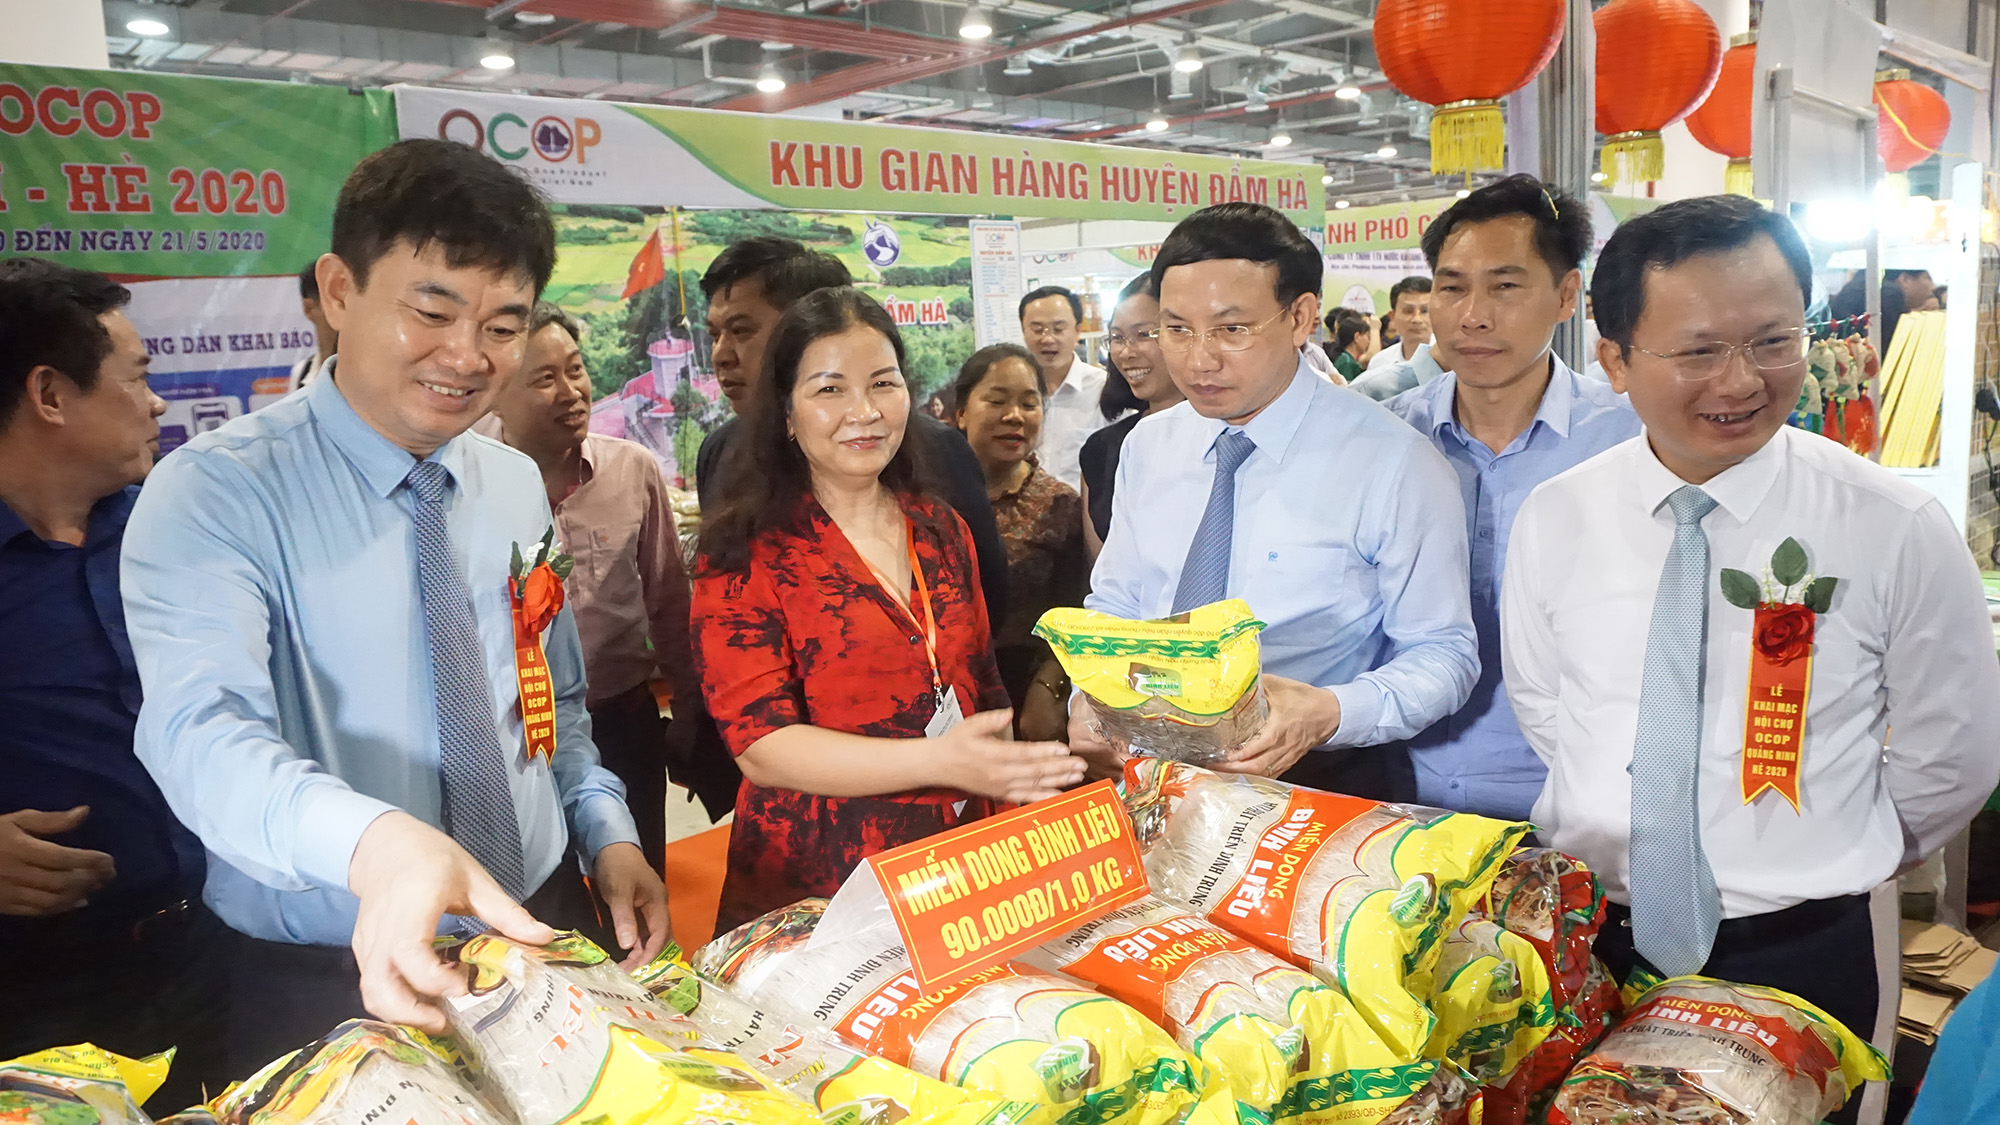 Hội chợ OCOP Quảng Ninh - Hè 2020 là một trong những sự kiện mở đầu cho mùa du lịch sau khi dịch bệnh COVID-29 cơ bản được kiểm soát. (Ảnh: Minh Đức)